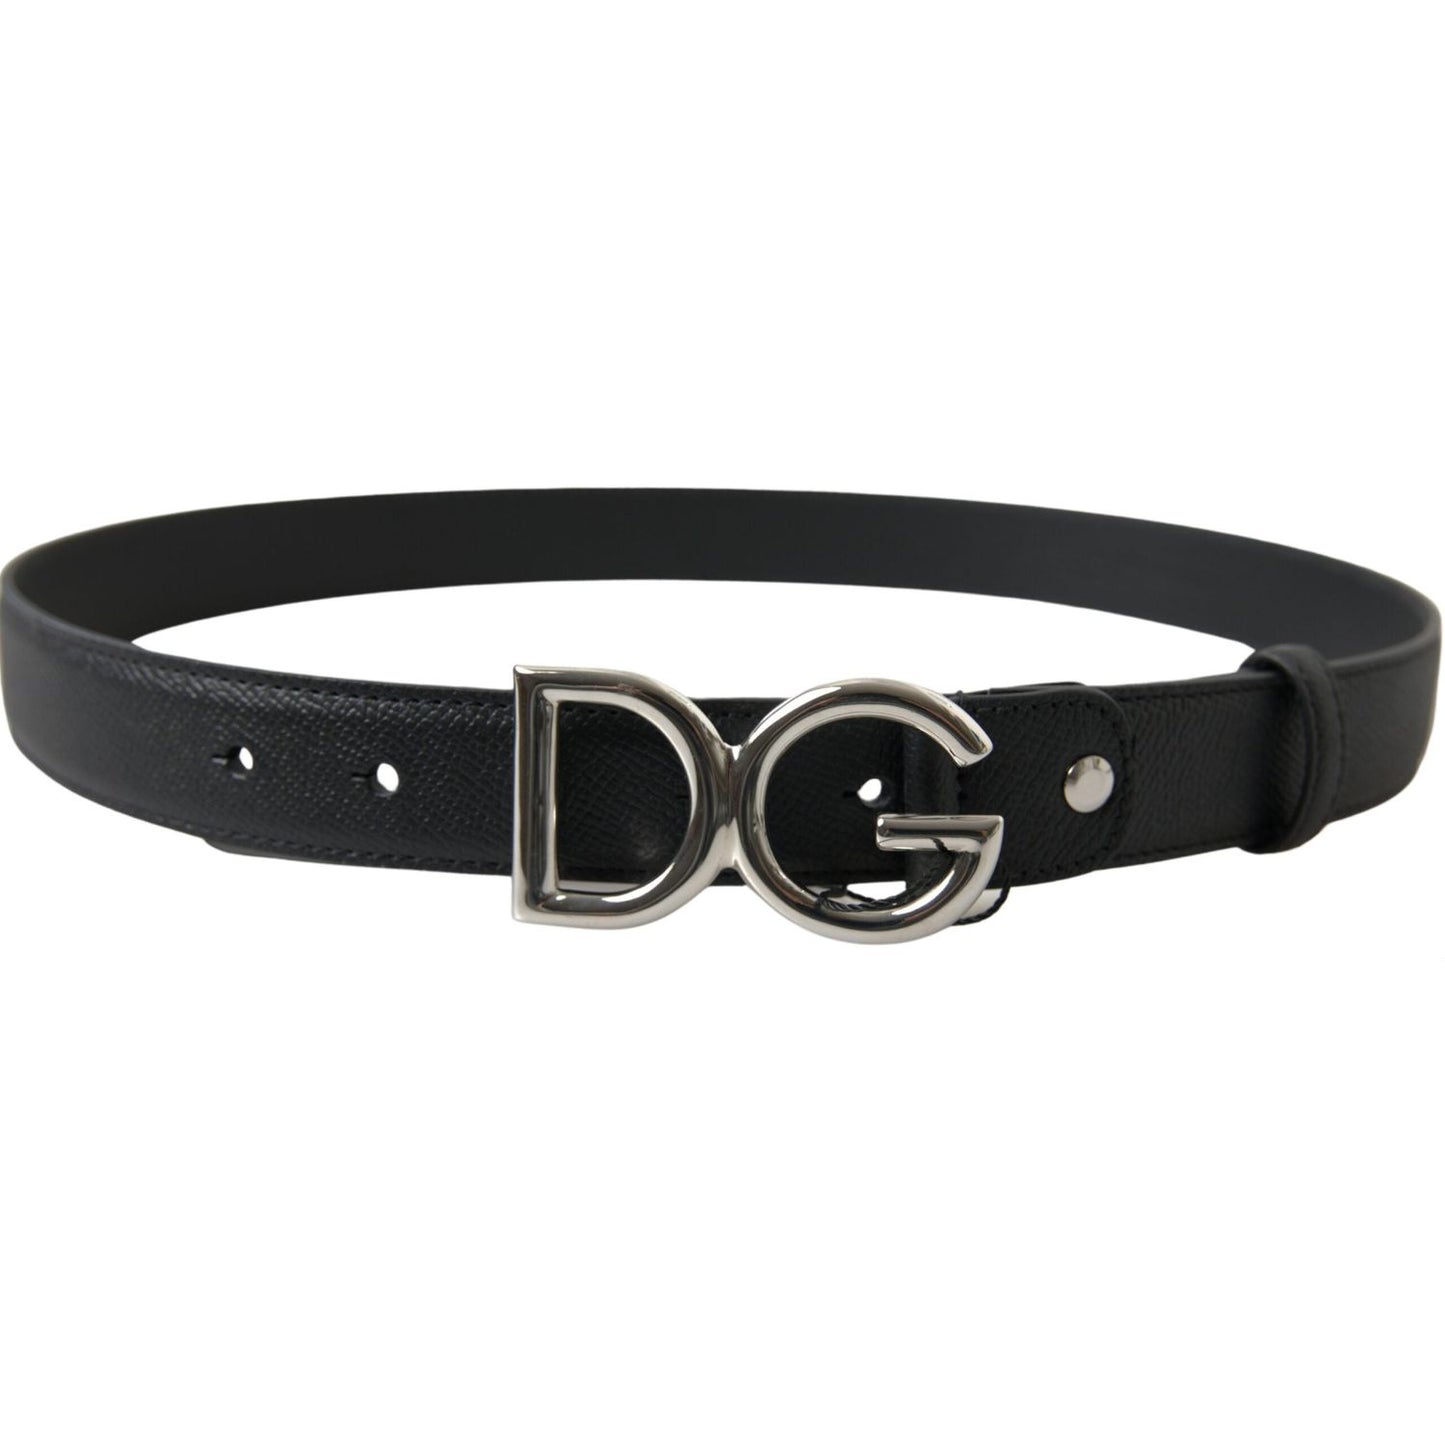 Dolce & Gabbana Elegant Black Leather Belt with Metal Buckle black-leather-silver-logo-metal-buckle-belt